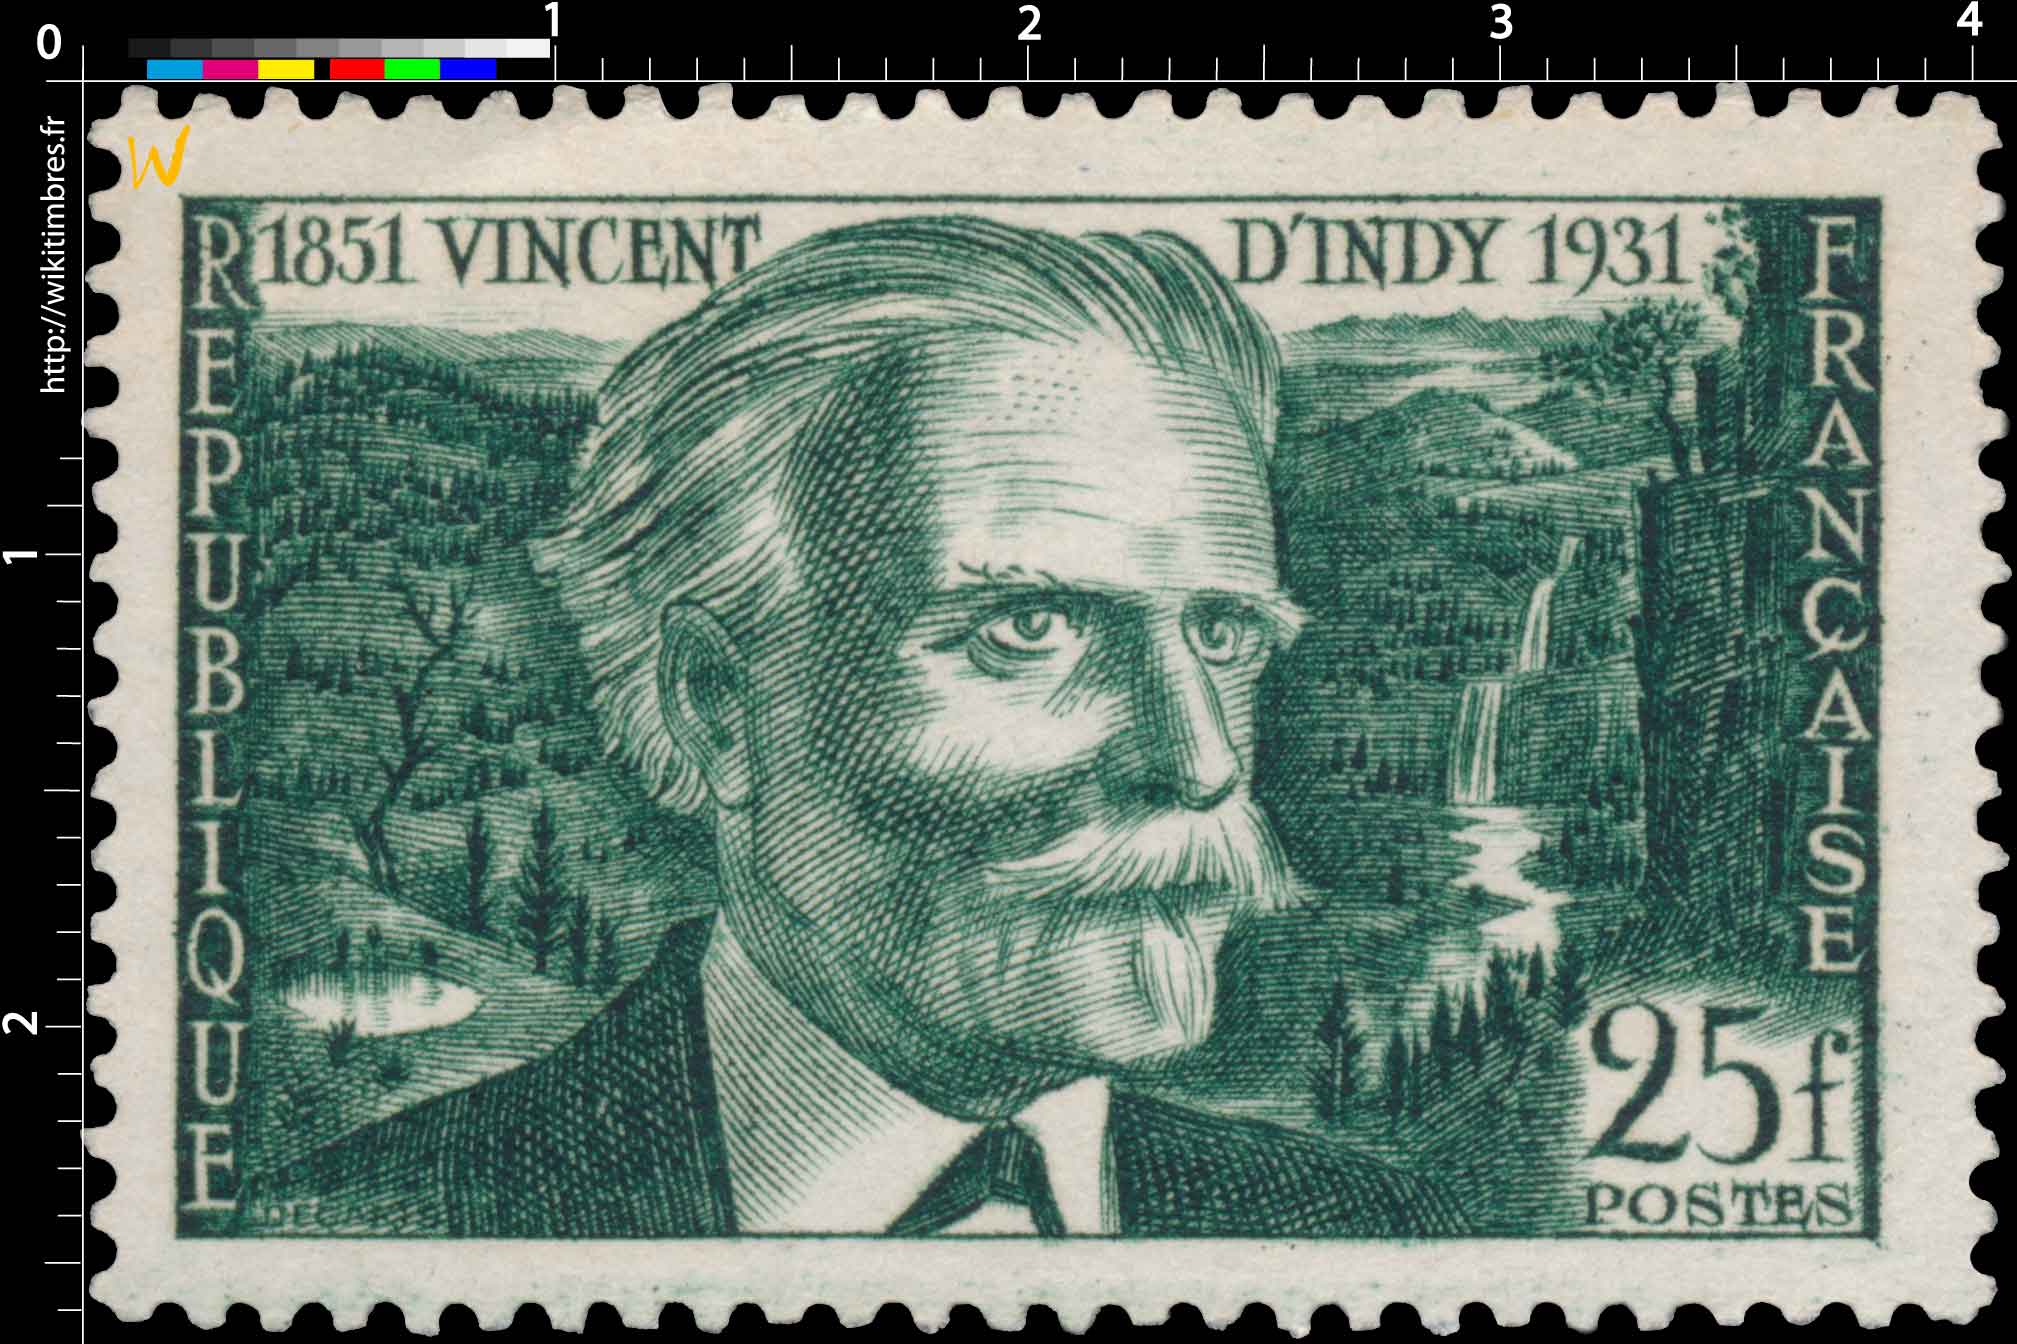 VINCENT D'INDY 1851-1931